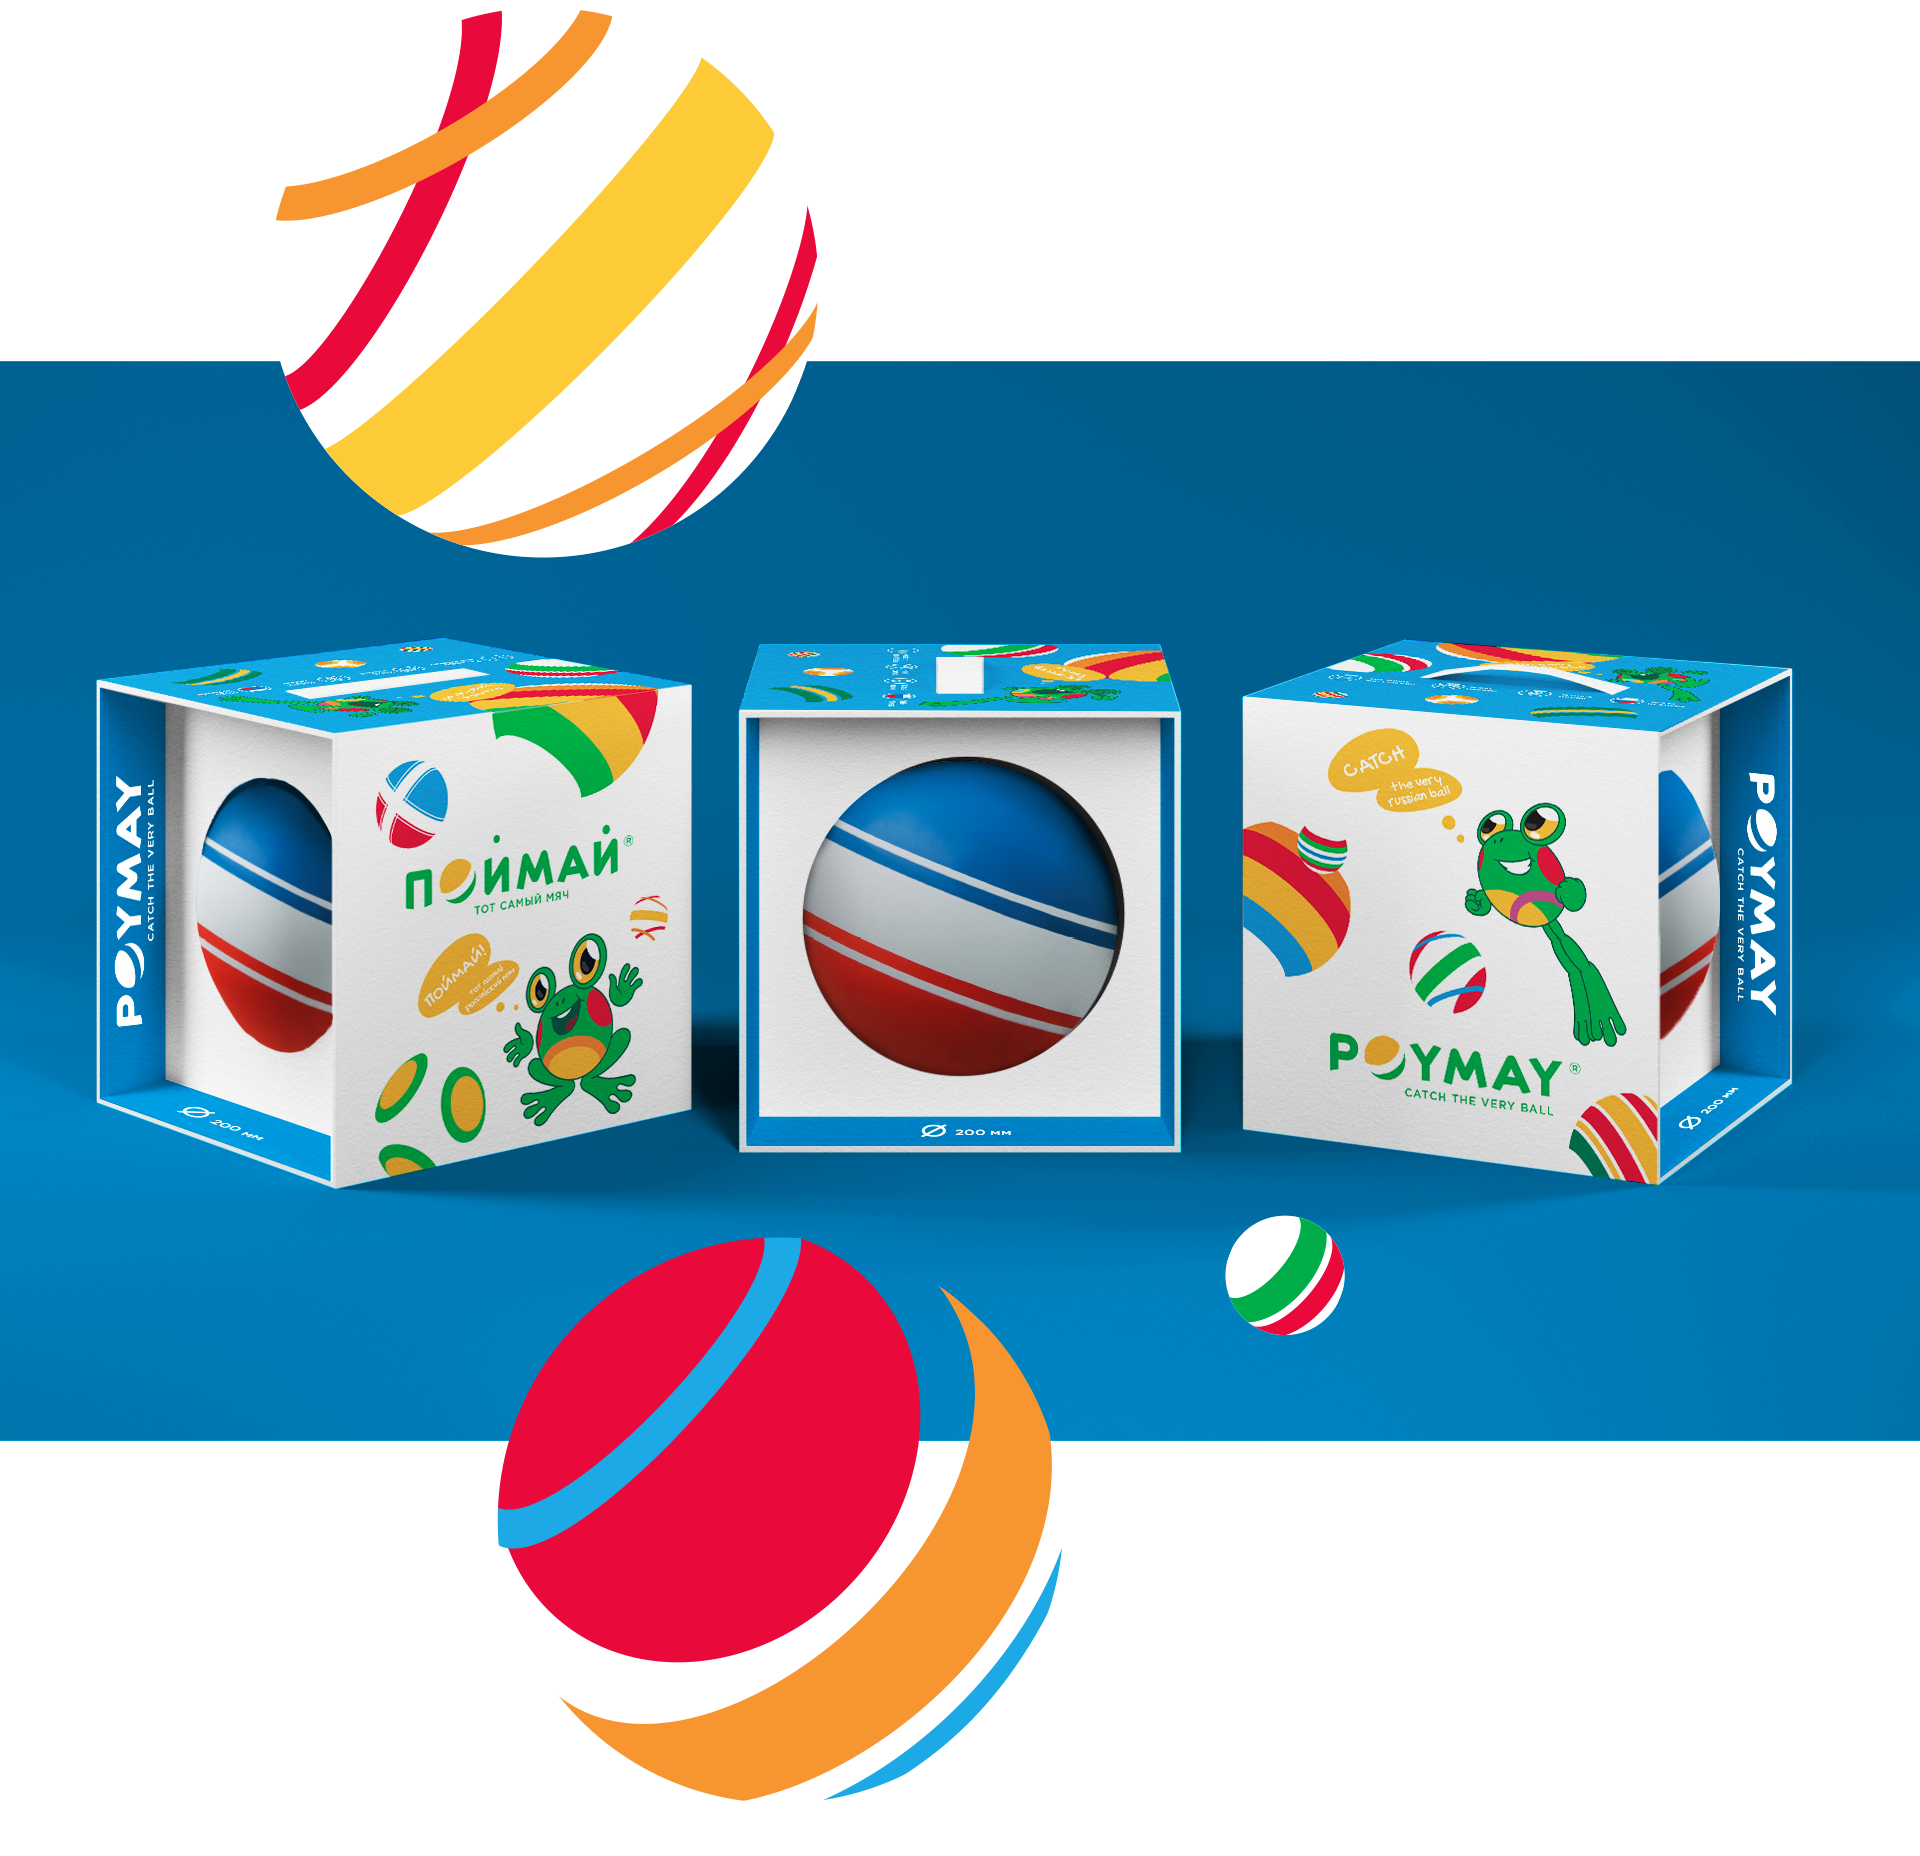 Дизайн упаковки резиновых мячей